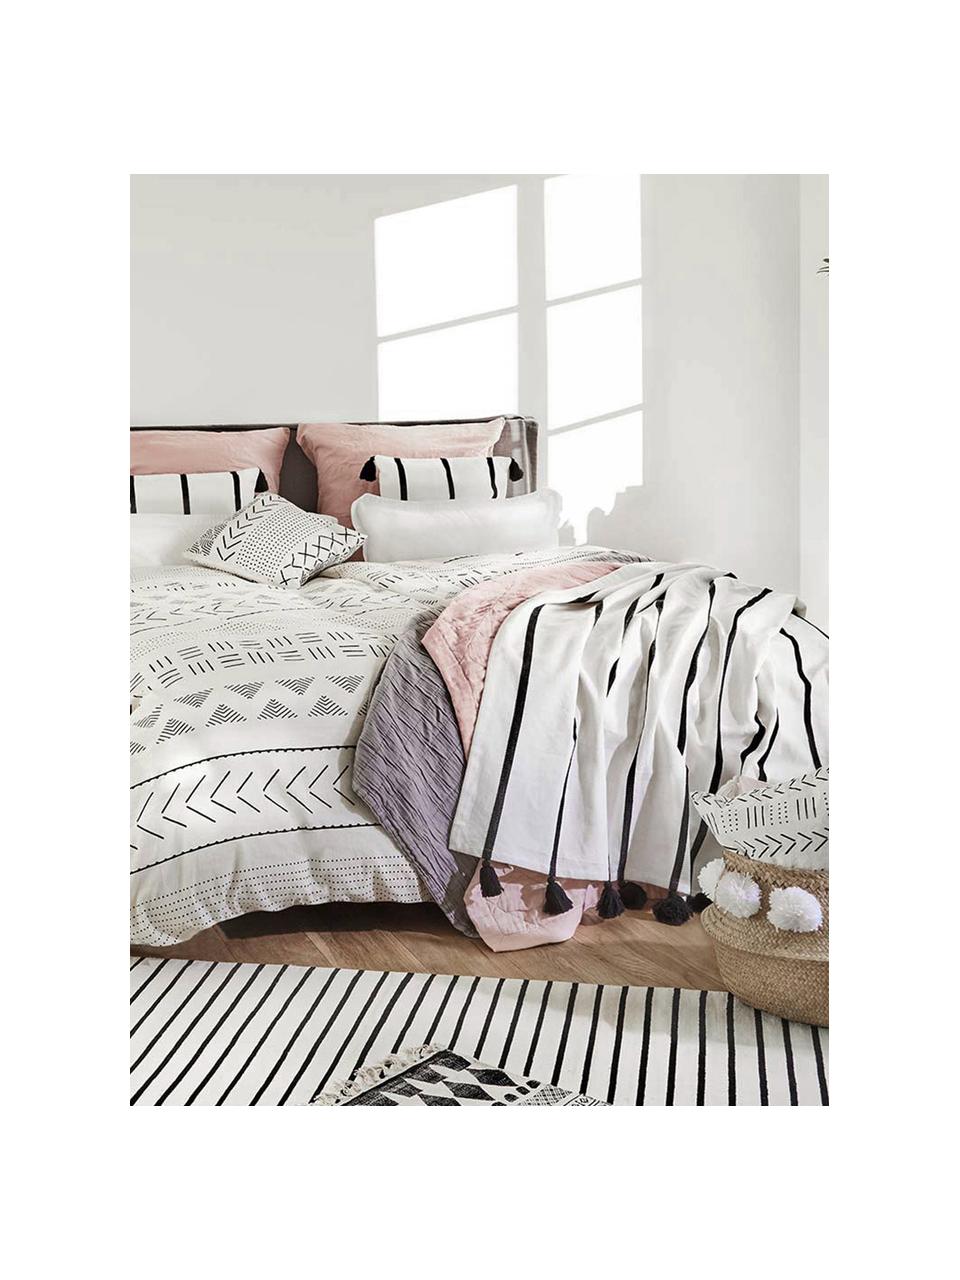 Biancheria da letto boho in cotone lavato Kohana, Bianco crema, nero, 255 x 200 cm, 3 pz